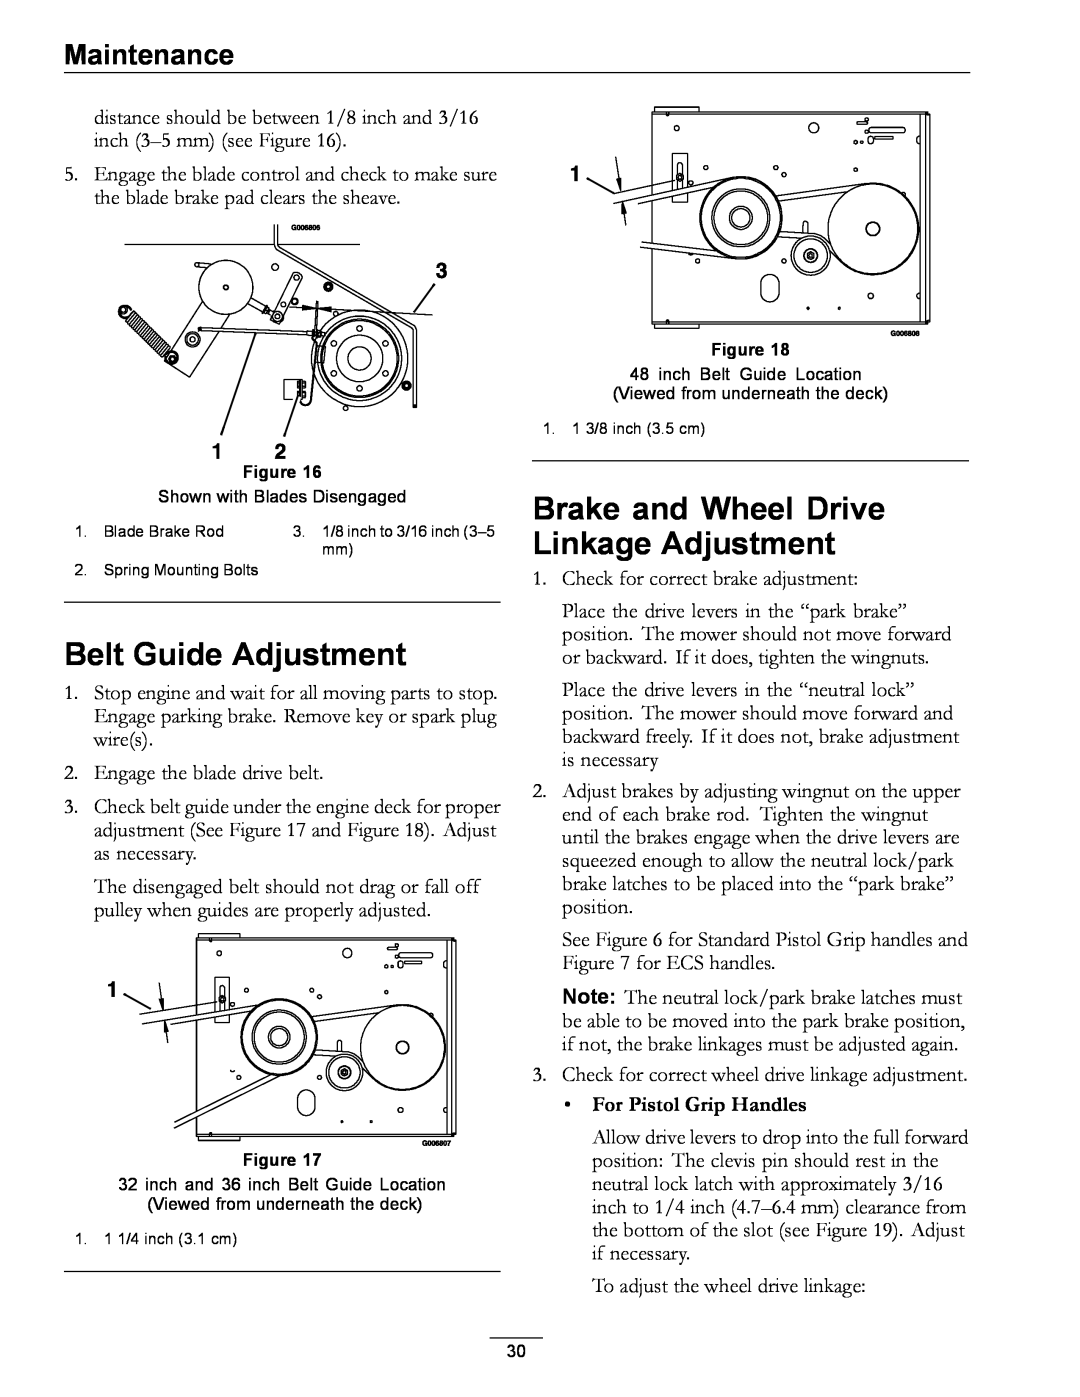 Exmark 4500-689 Belt Guide Adjustment, Brake and Wheel Drive Linkage Adjustment, Maintenance, For Pistol Grip Handles 